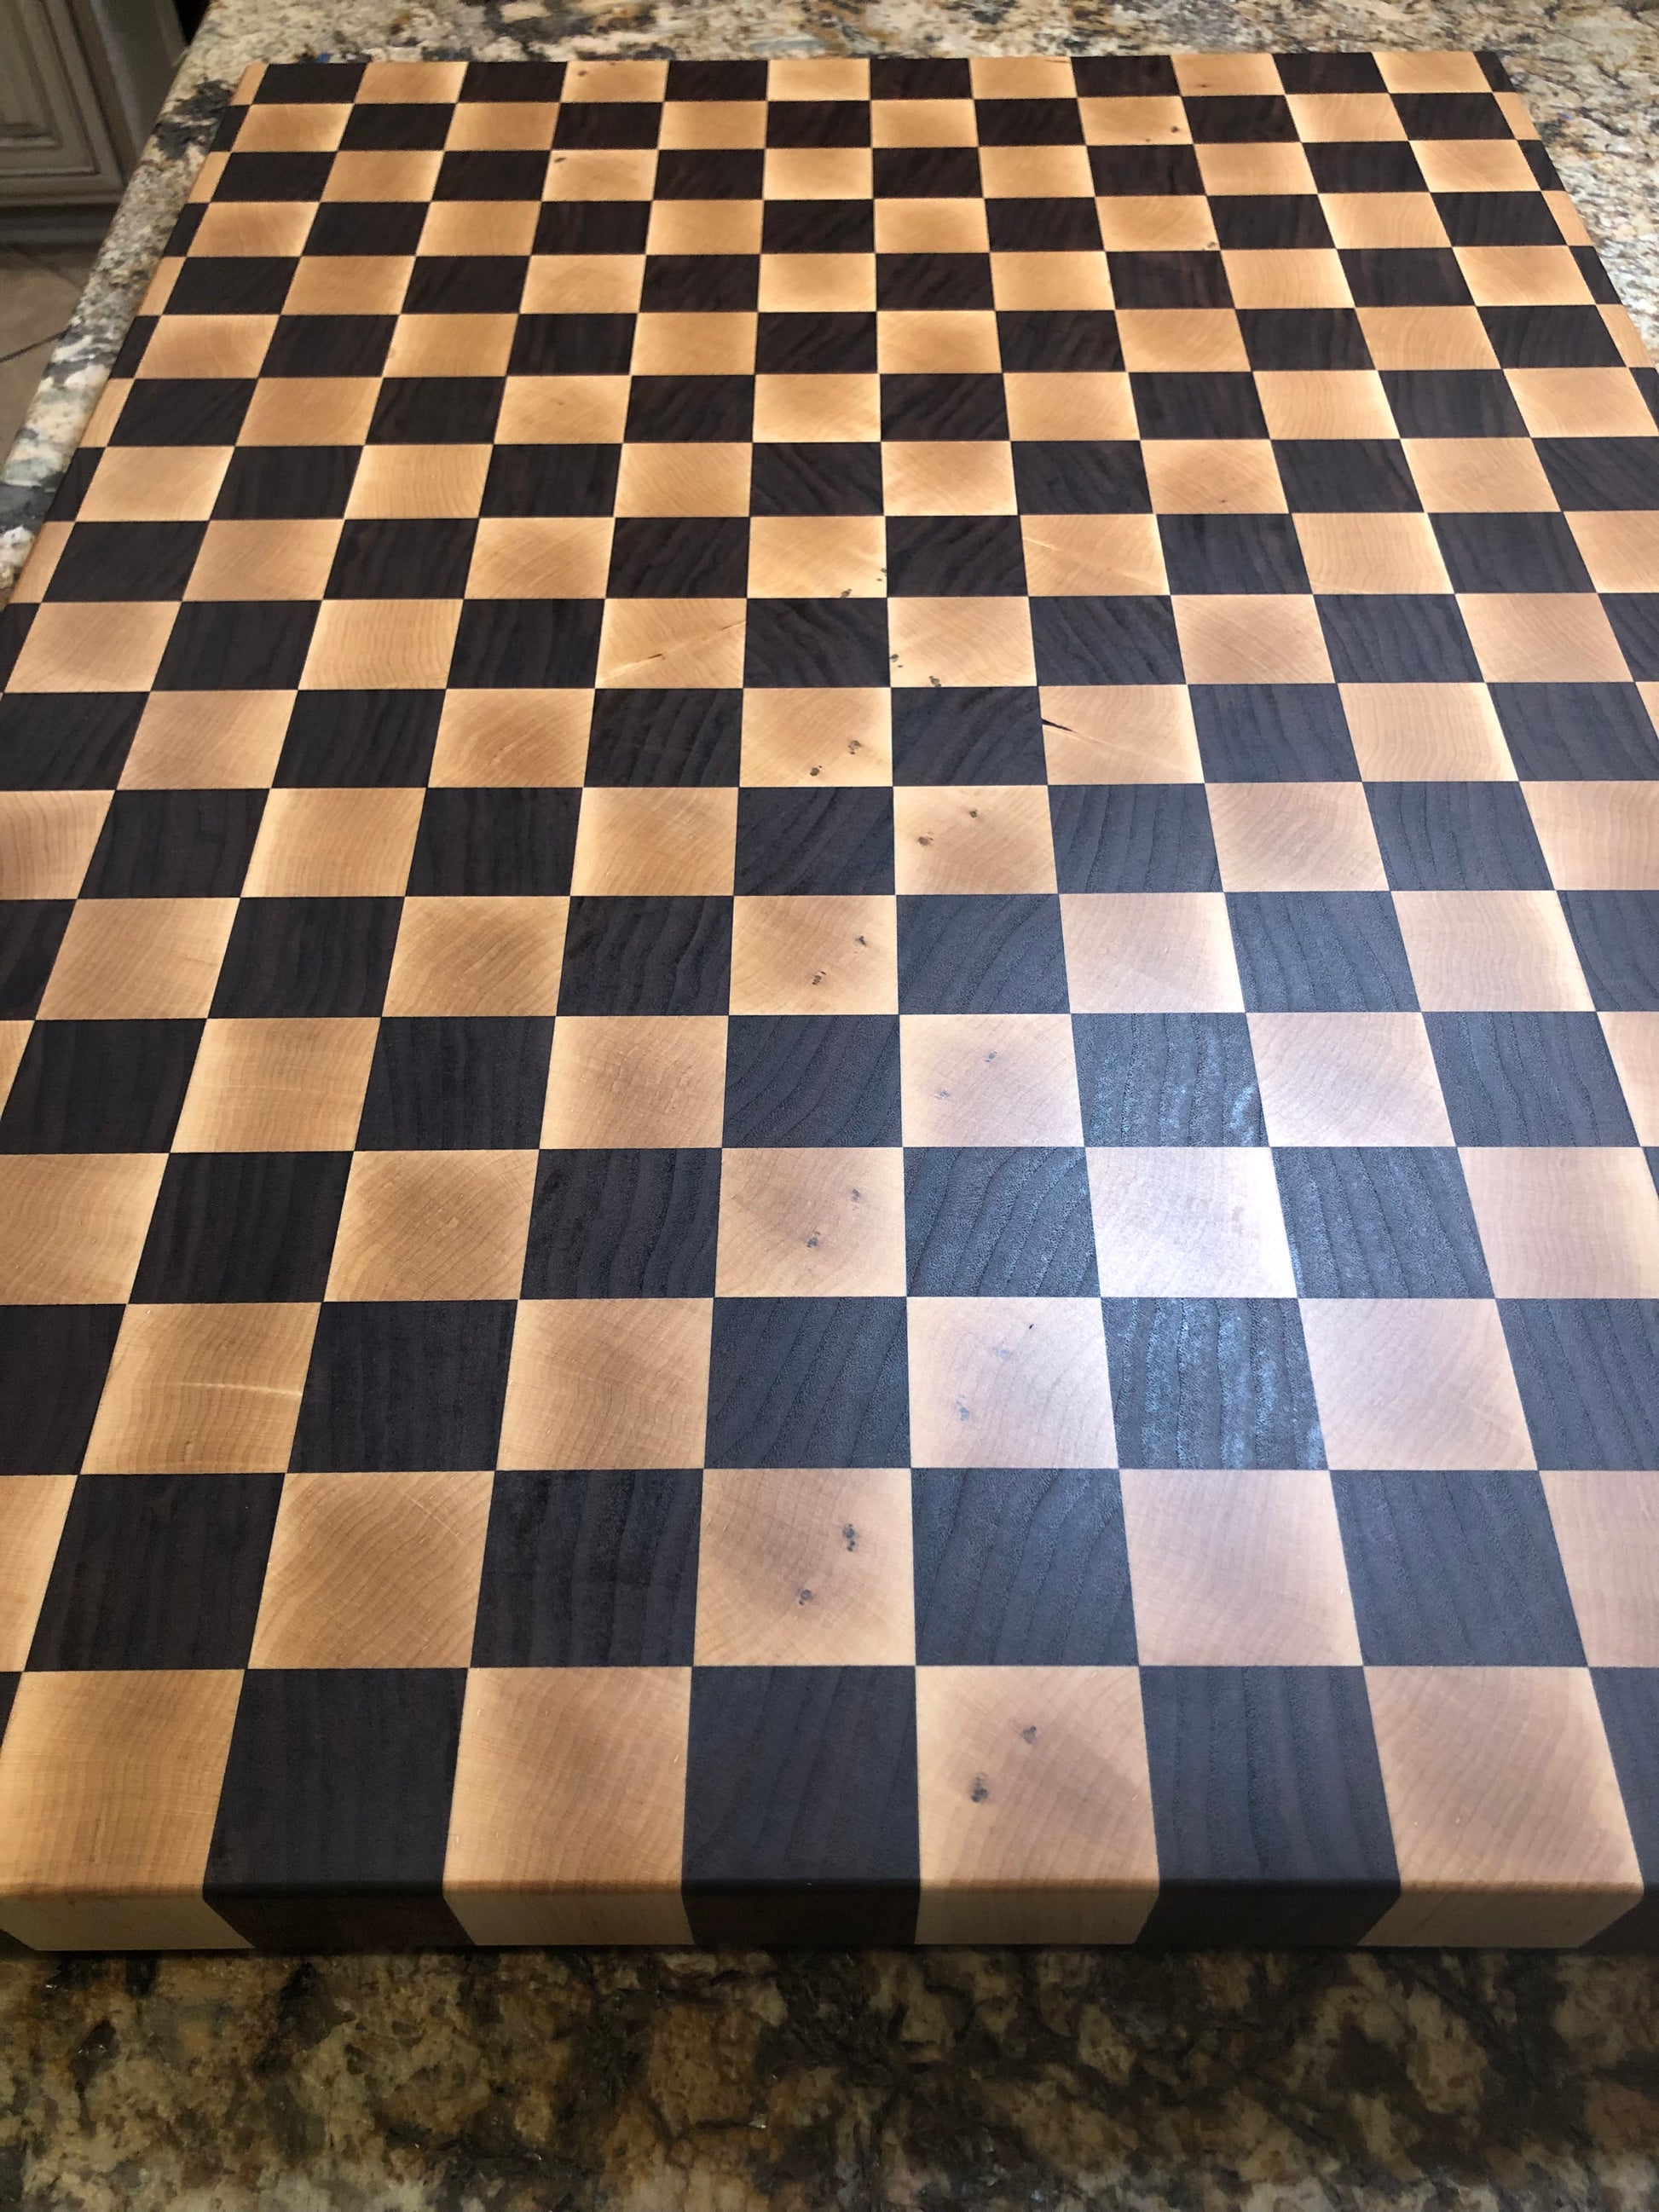 Checkerboard Finish Closeup